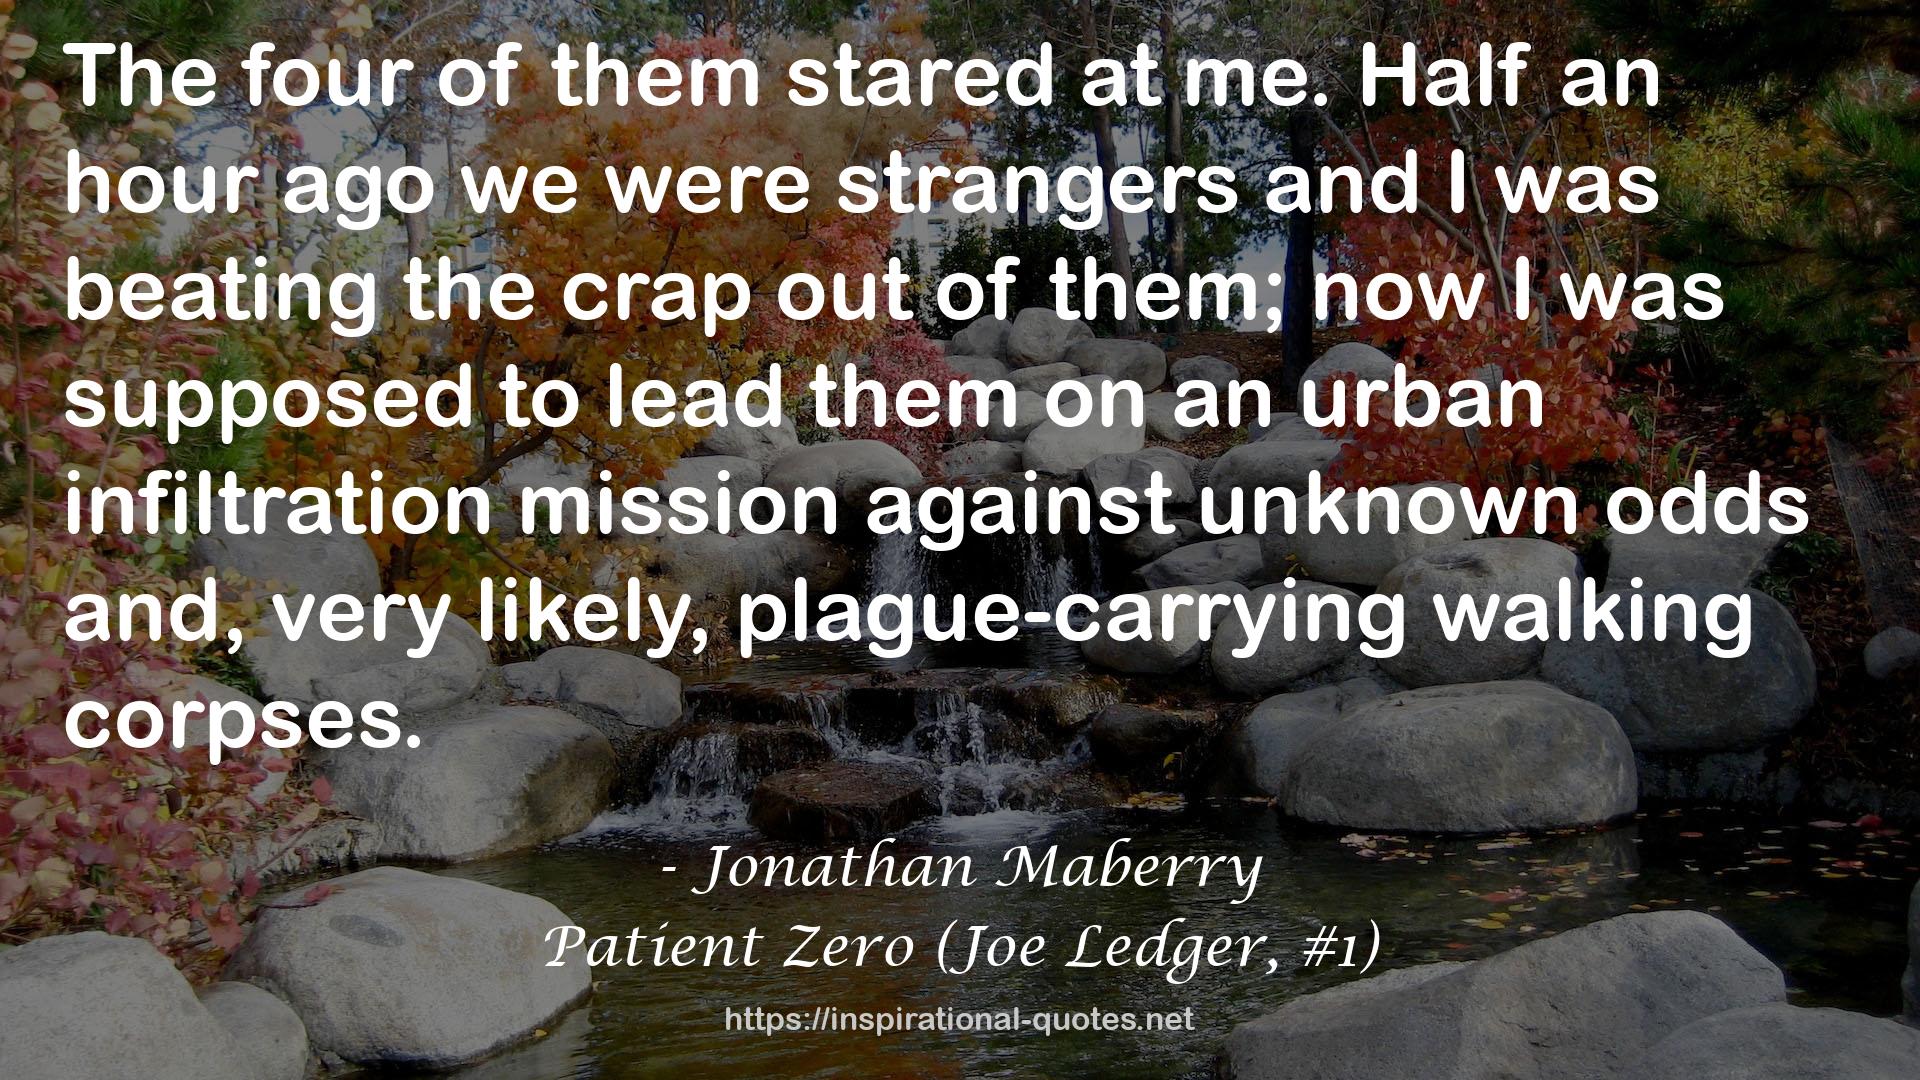 Patient Zero (Joe Ledger, #1) QUOTES